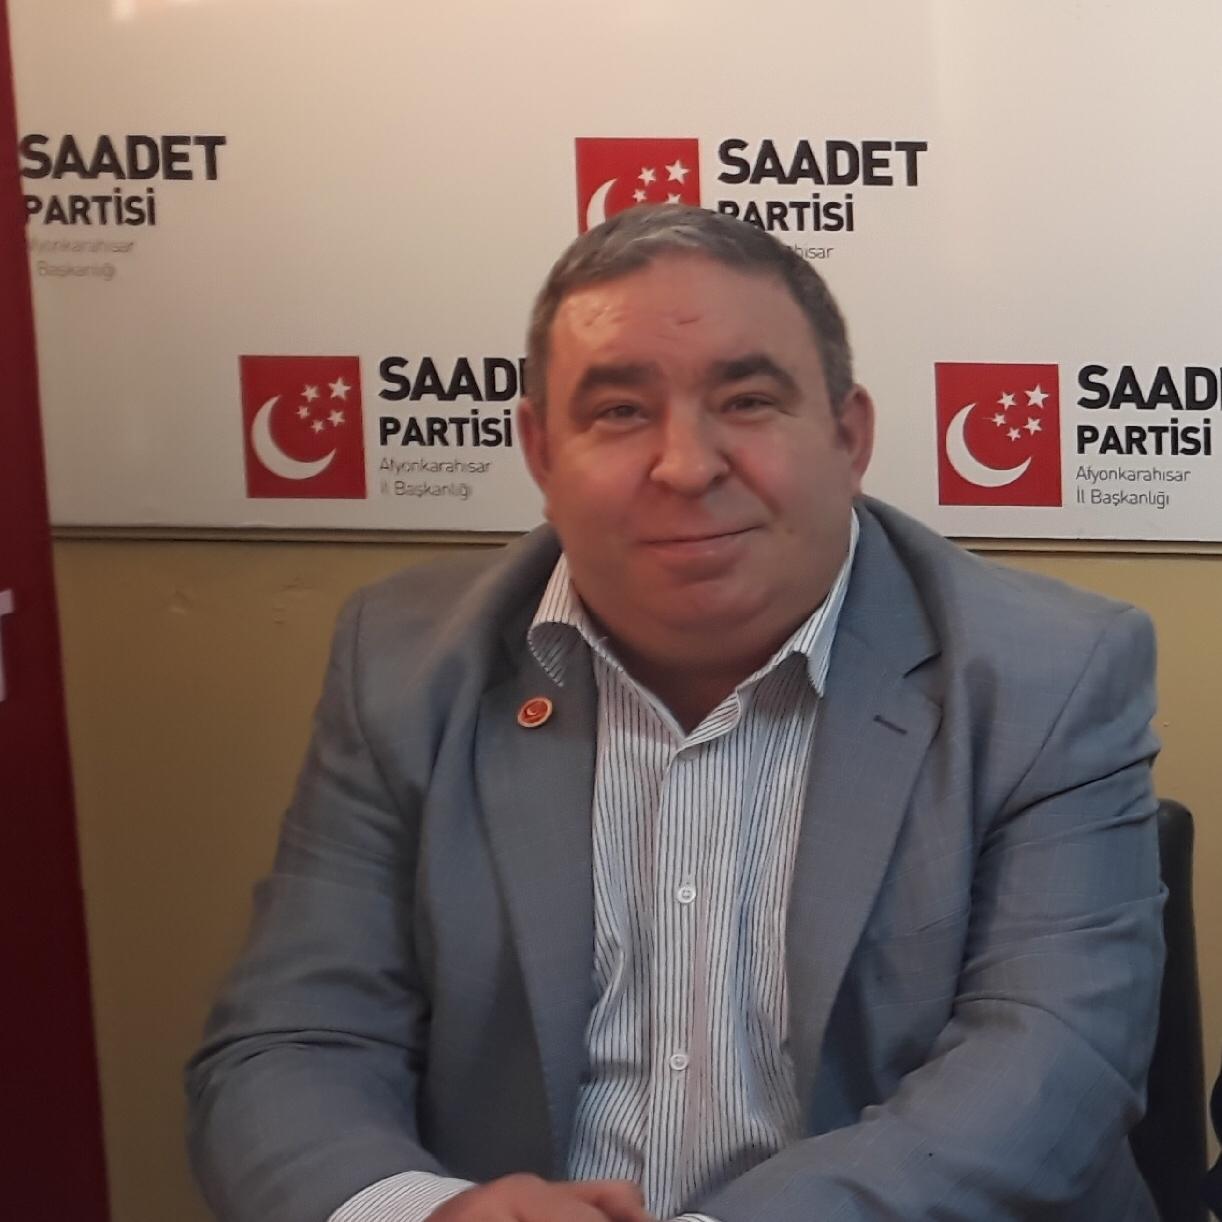 “Siyasi hesapları bırakıp Türkiye için taş altına el konulmalı”